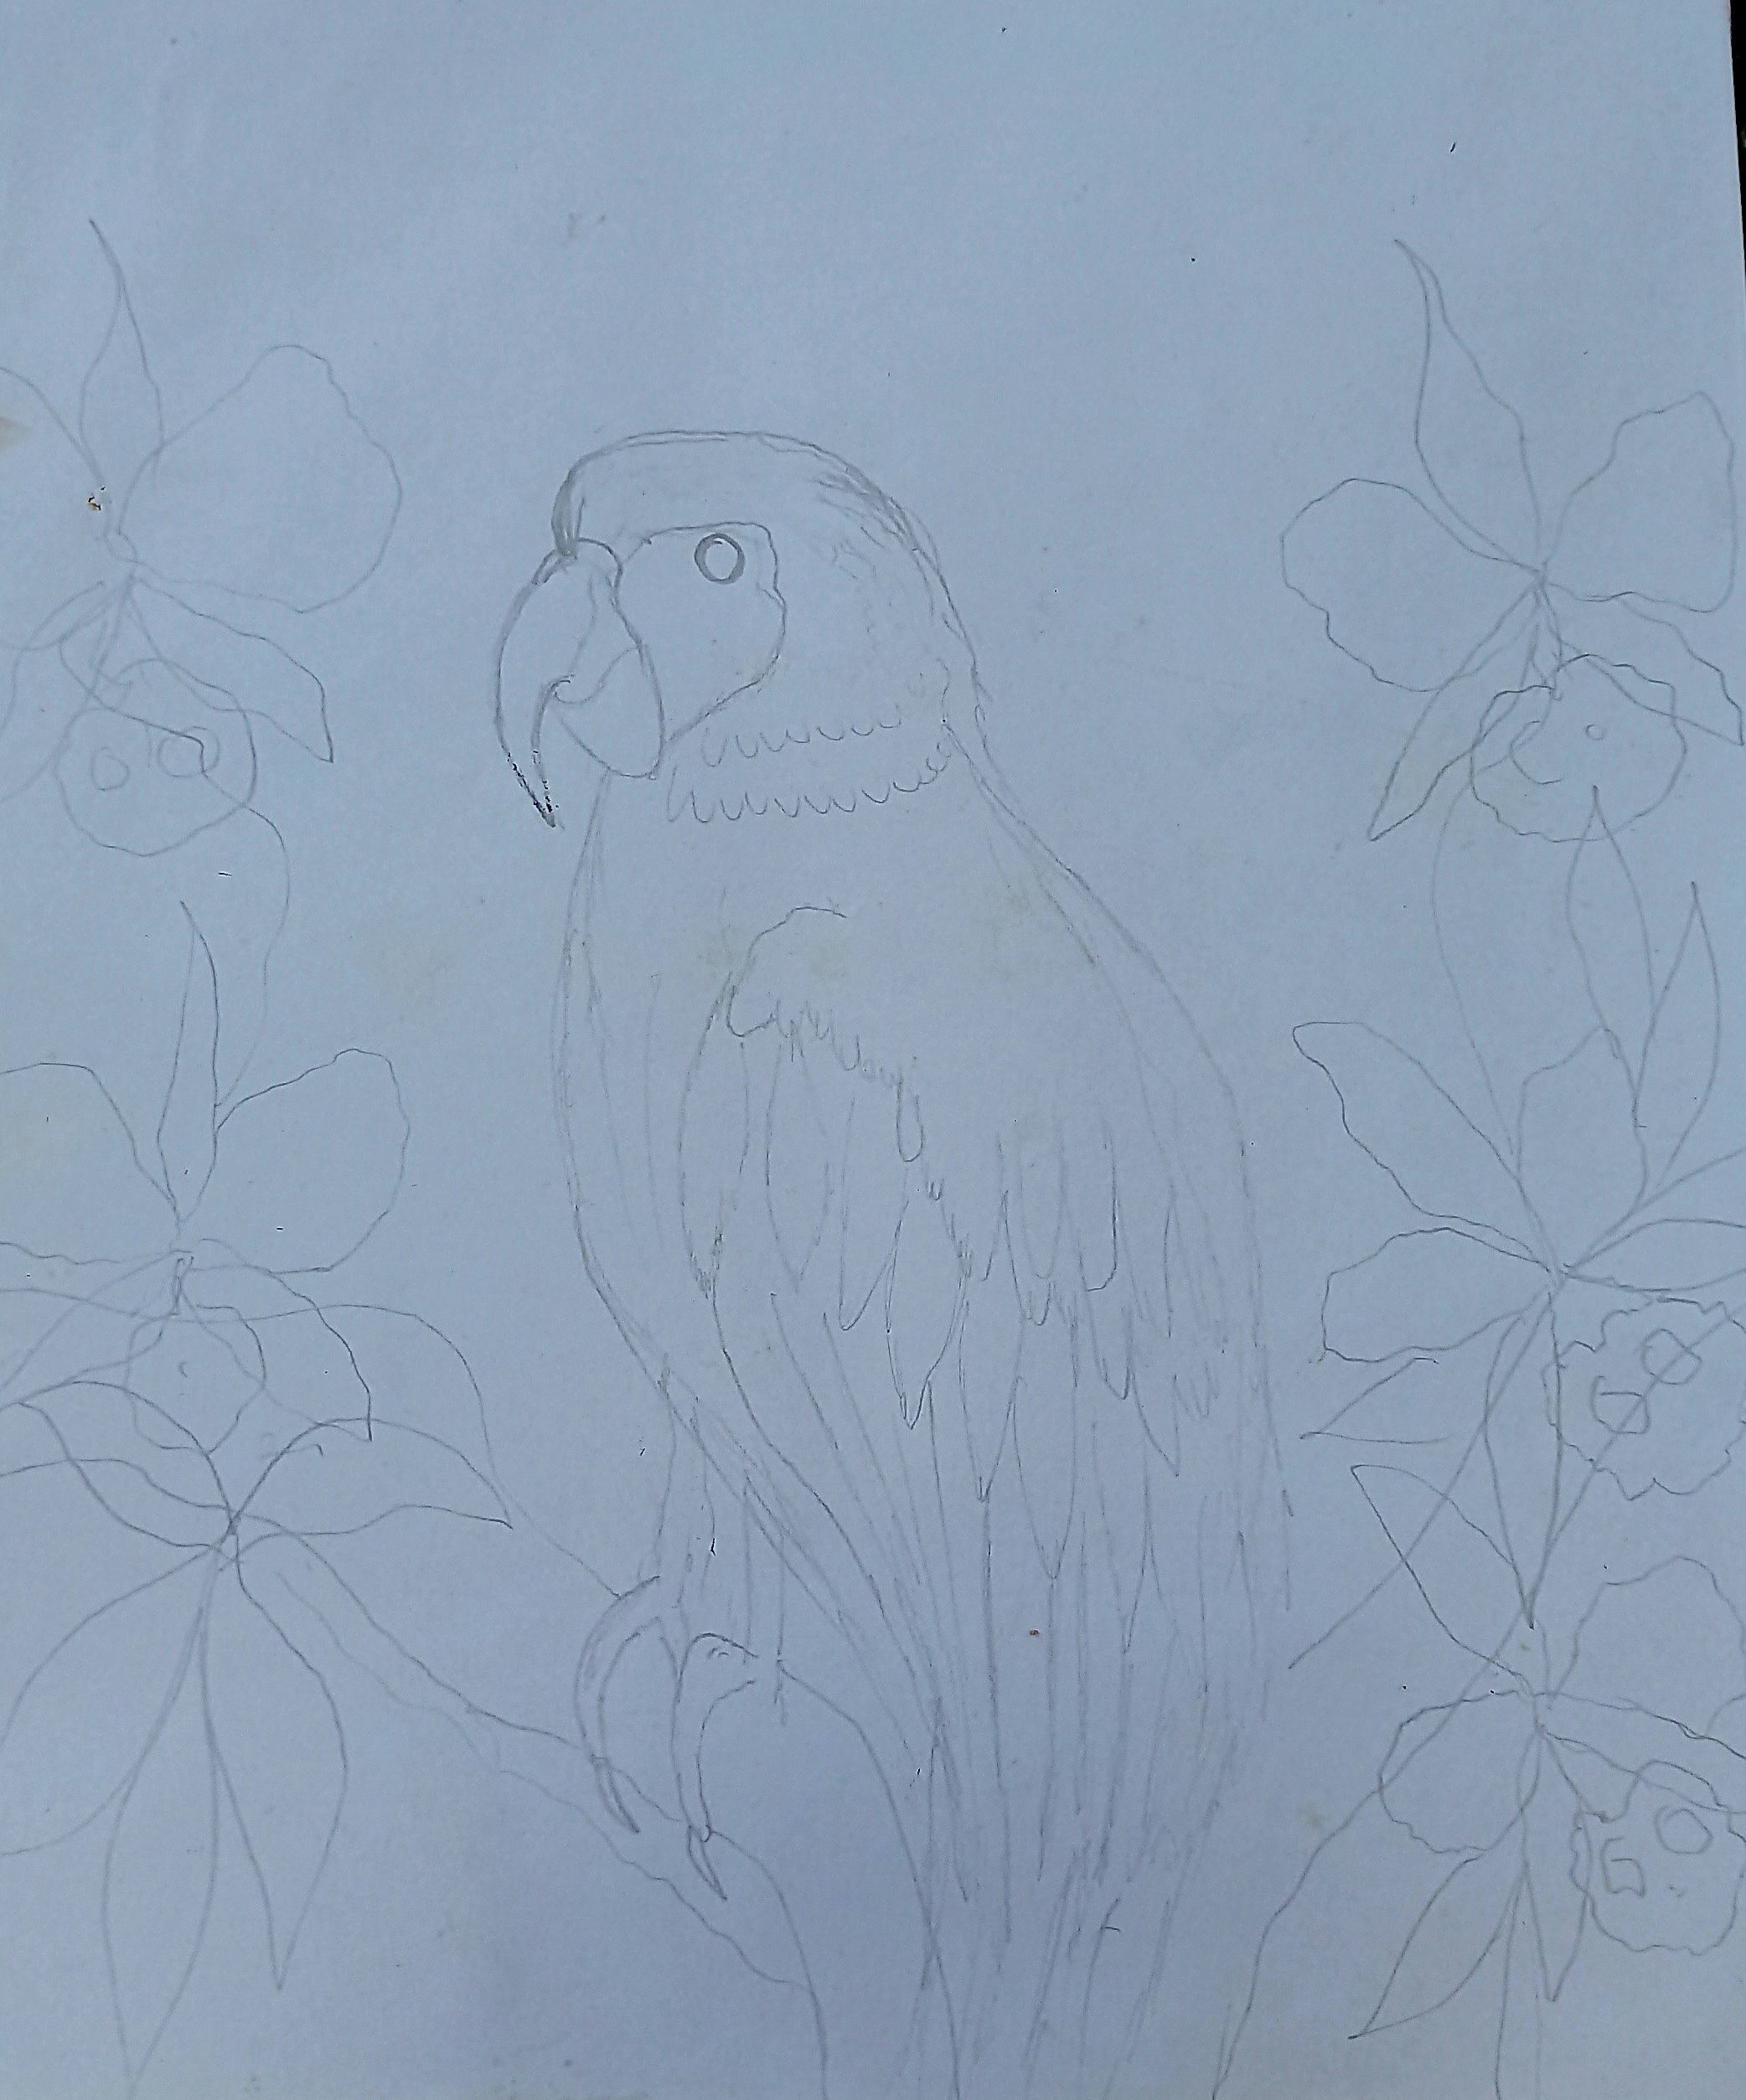 ESP/ENG] Hermoso dibujo inspirado en una guacamaya/Beautiful drawing  inspired by a macaw. — Hive